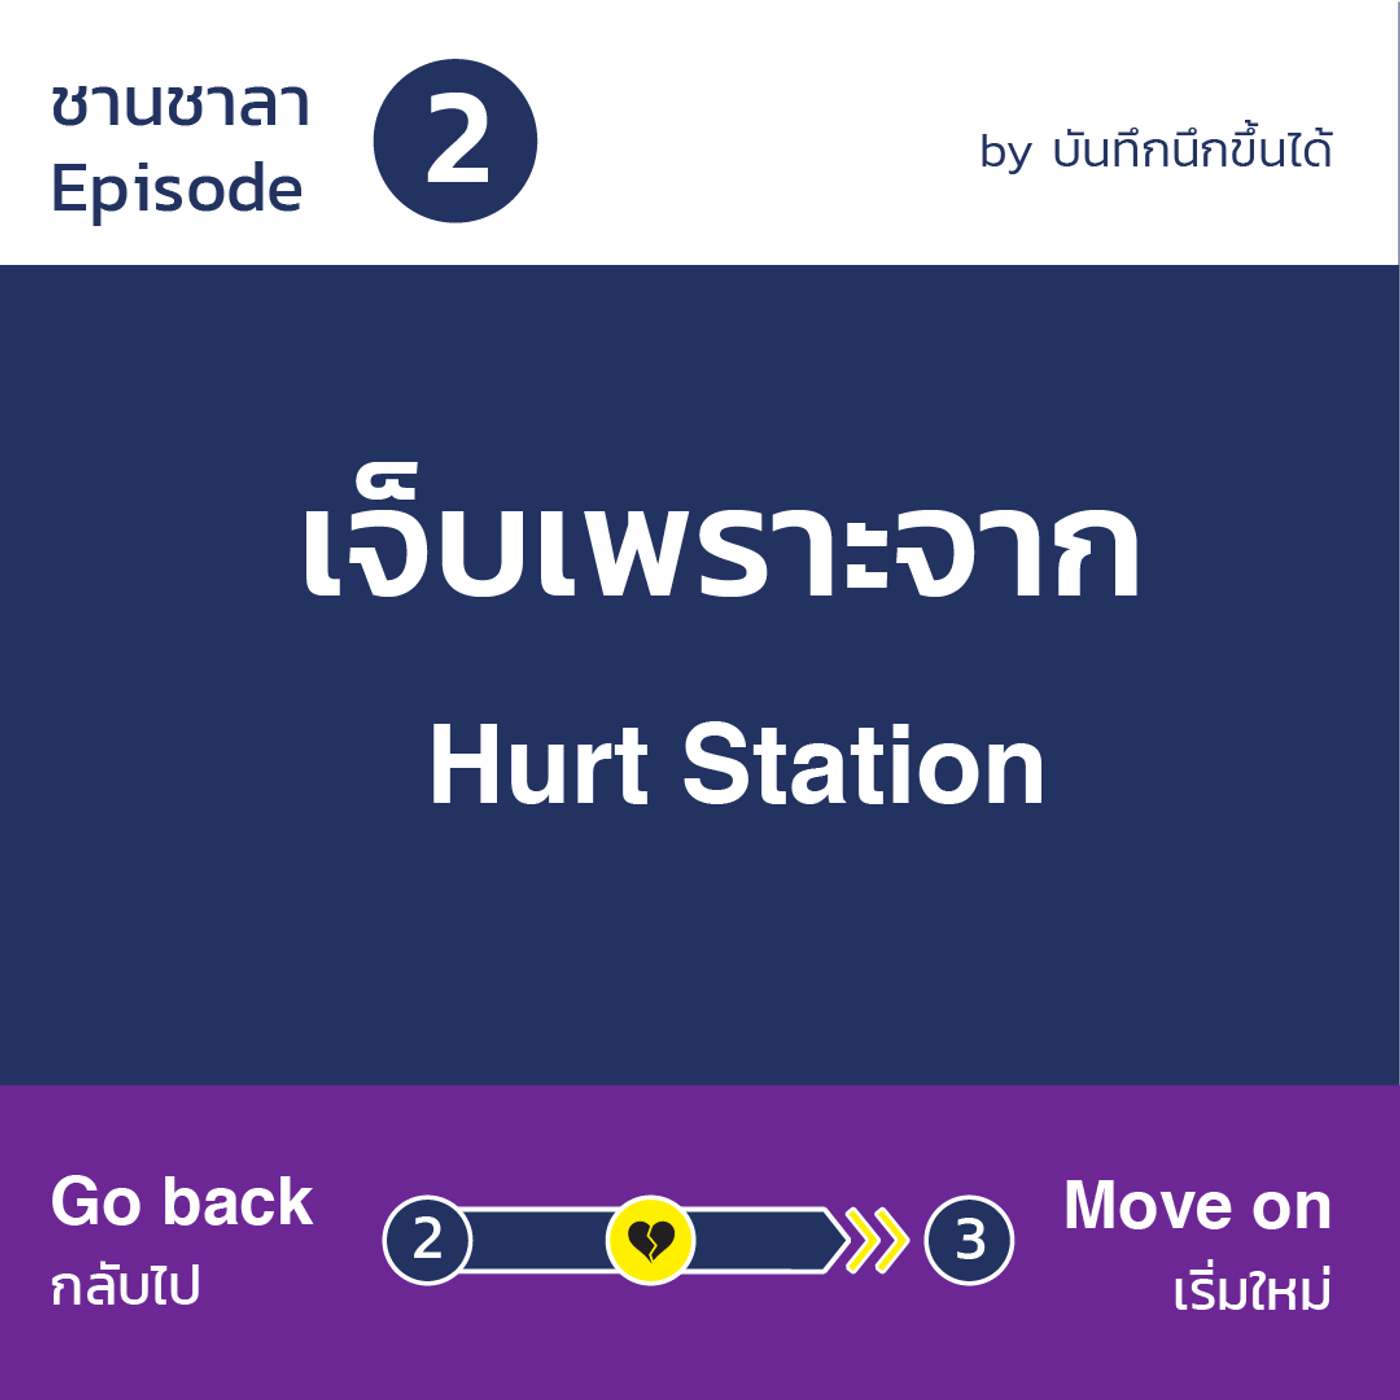 สถานีที่เจ็บ - EP.2 Hurt Station เจ็บเพราะจาก